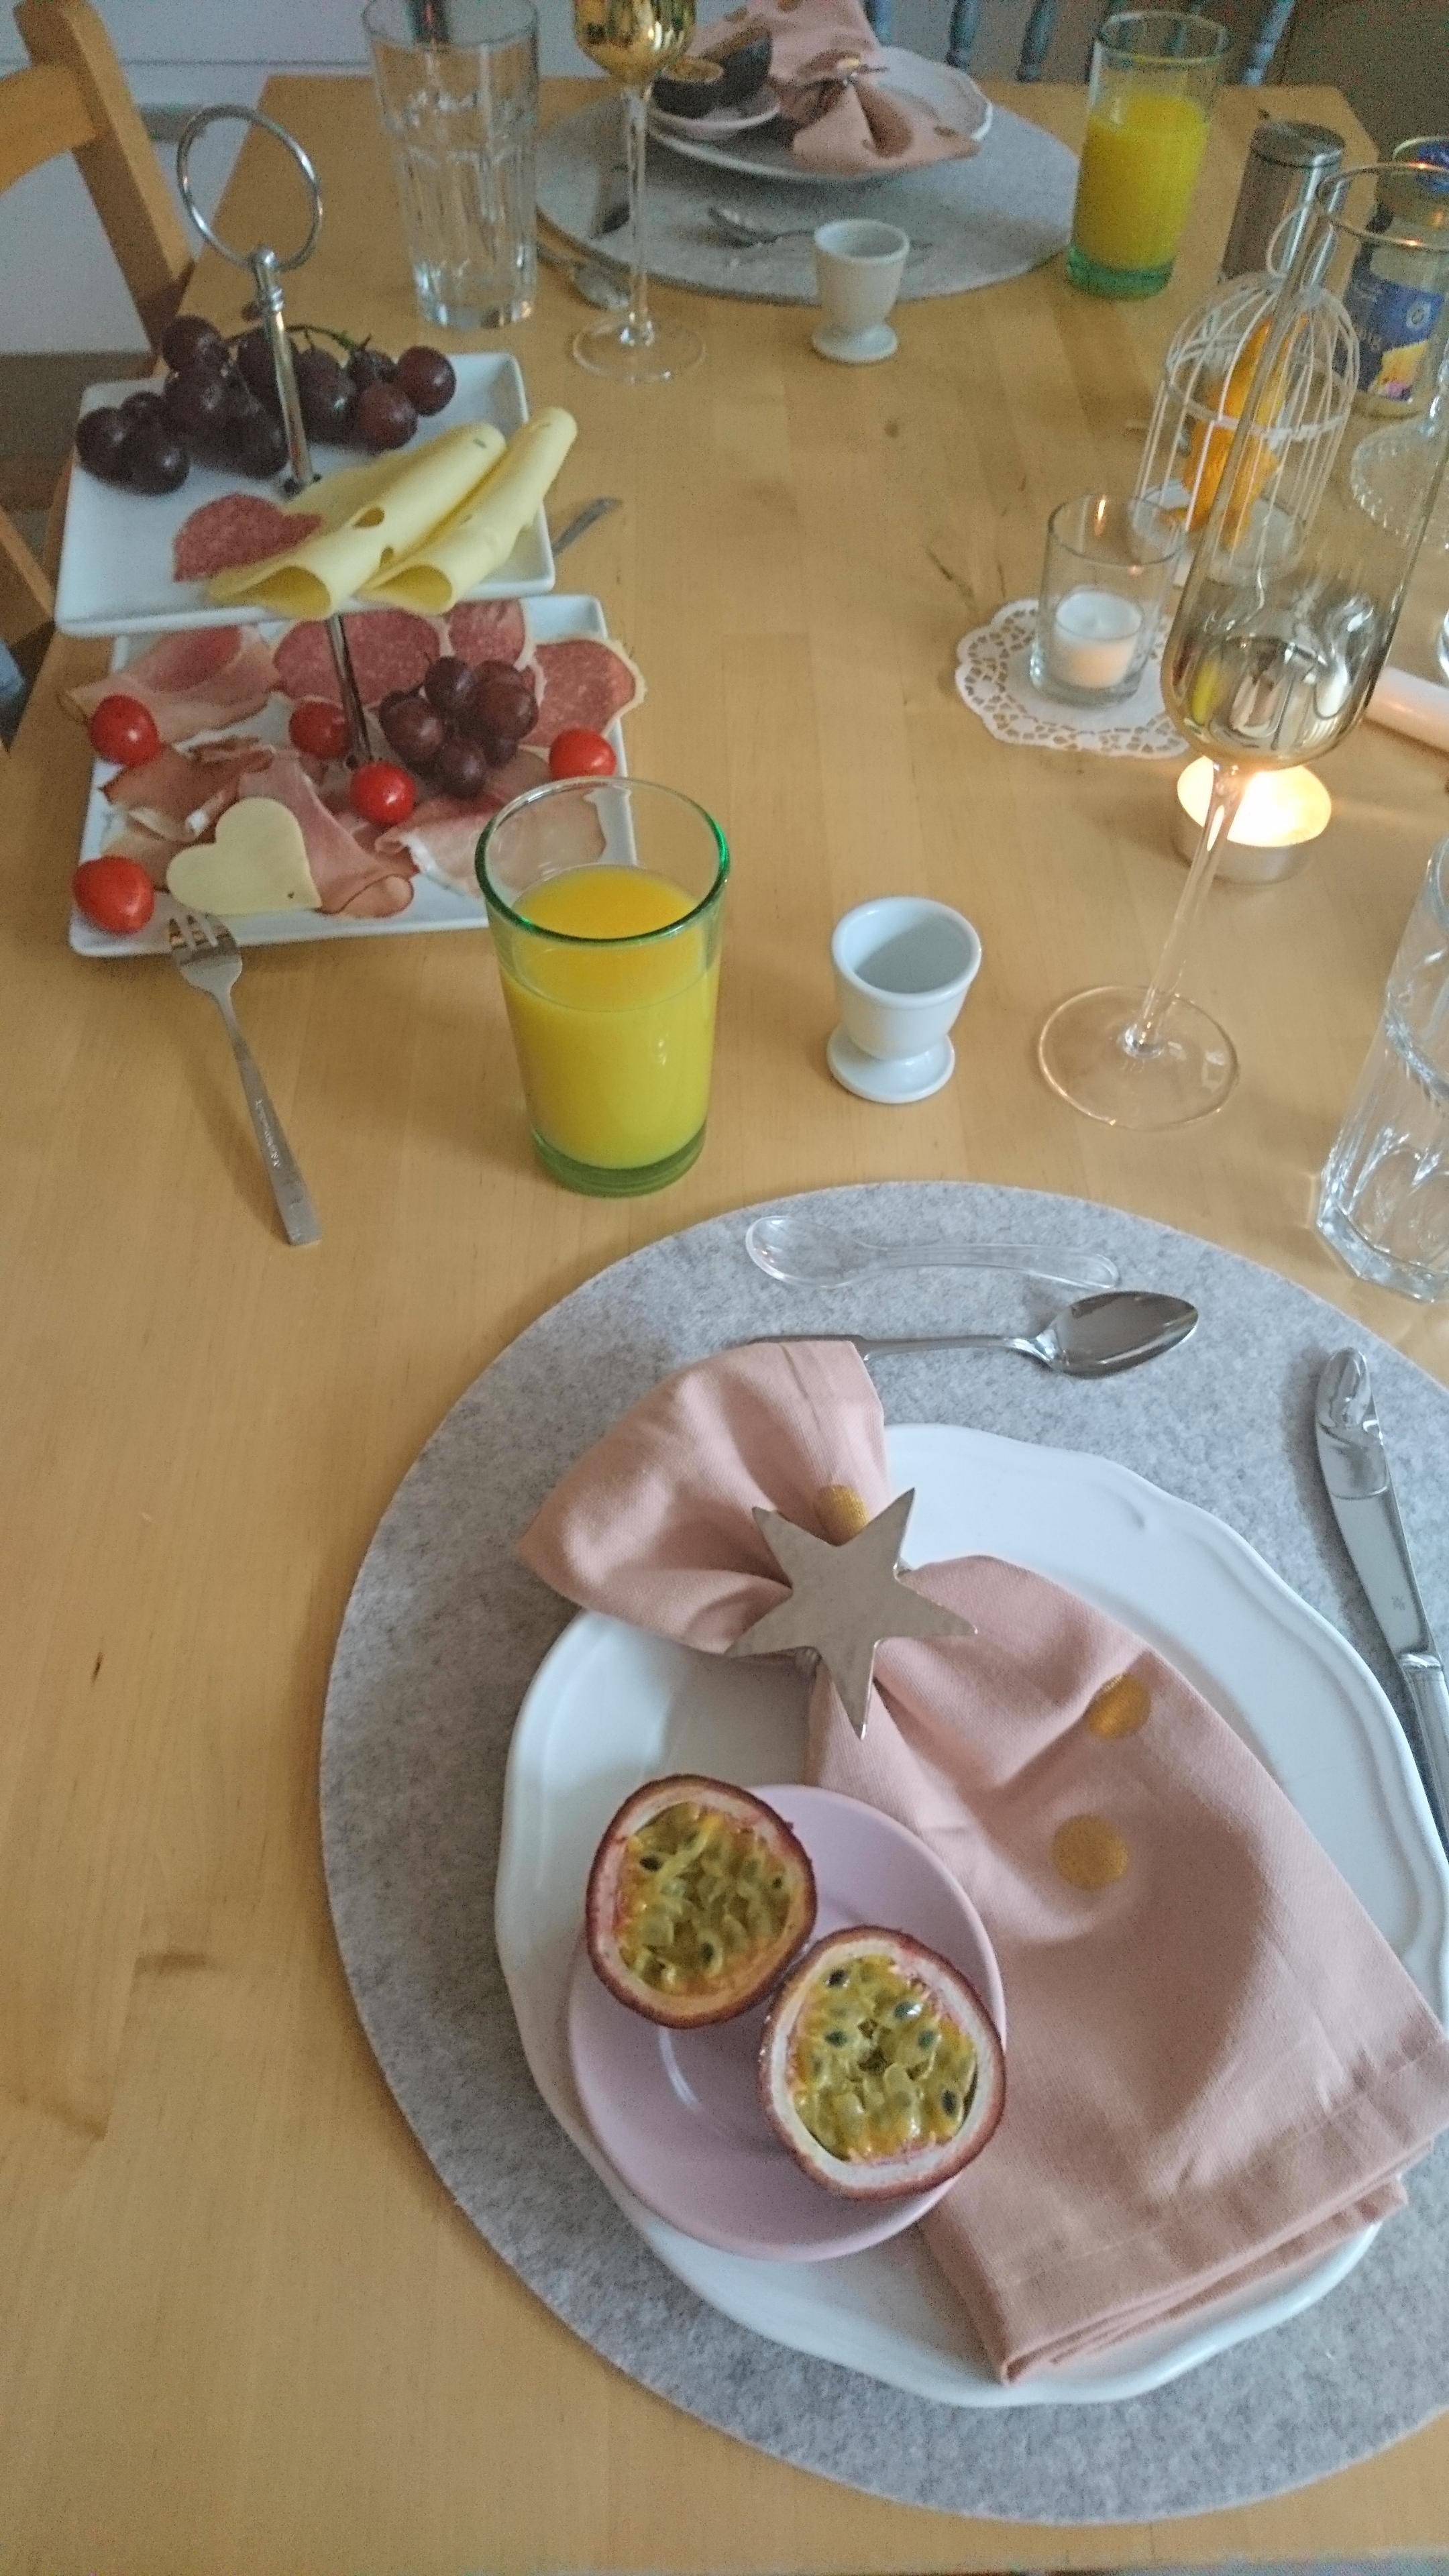 Breakfasts...they taste the best in nice company ☕ 

#foodchallenge #frühstückstisch